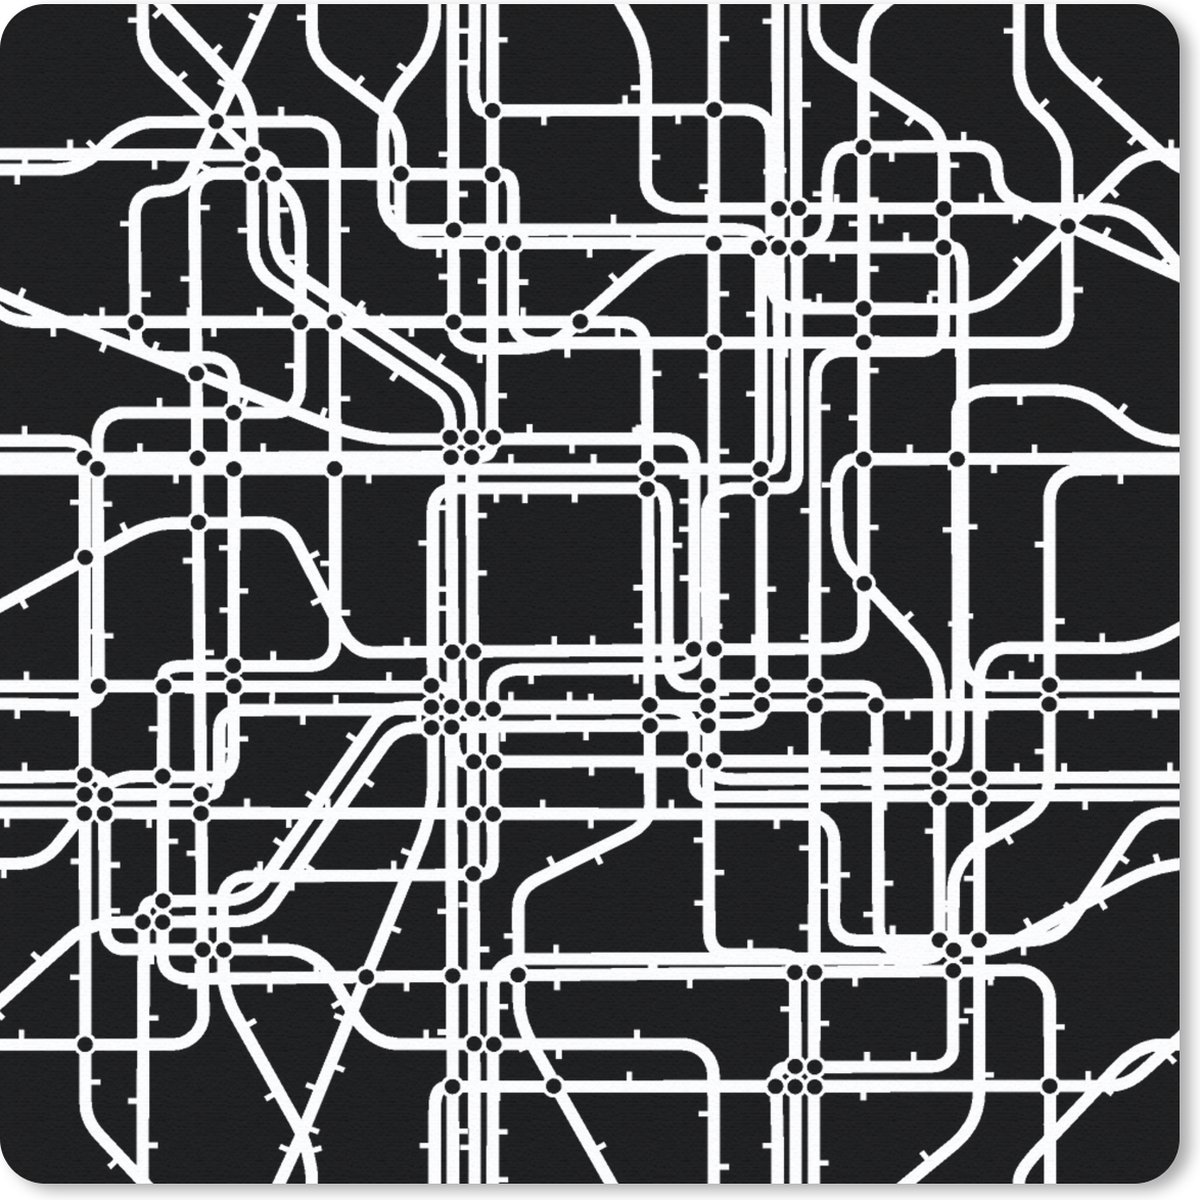 Muismat Klein - Netwerk - Patronen - Zwart Wit - Computer - 20x20 cm